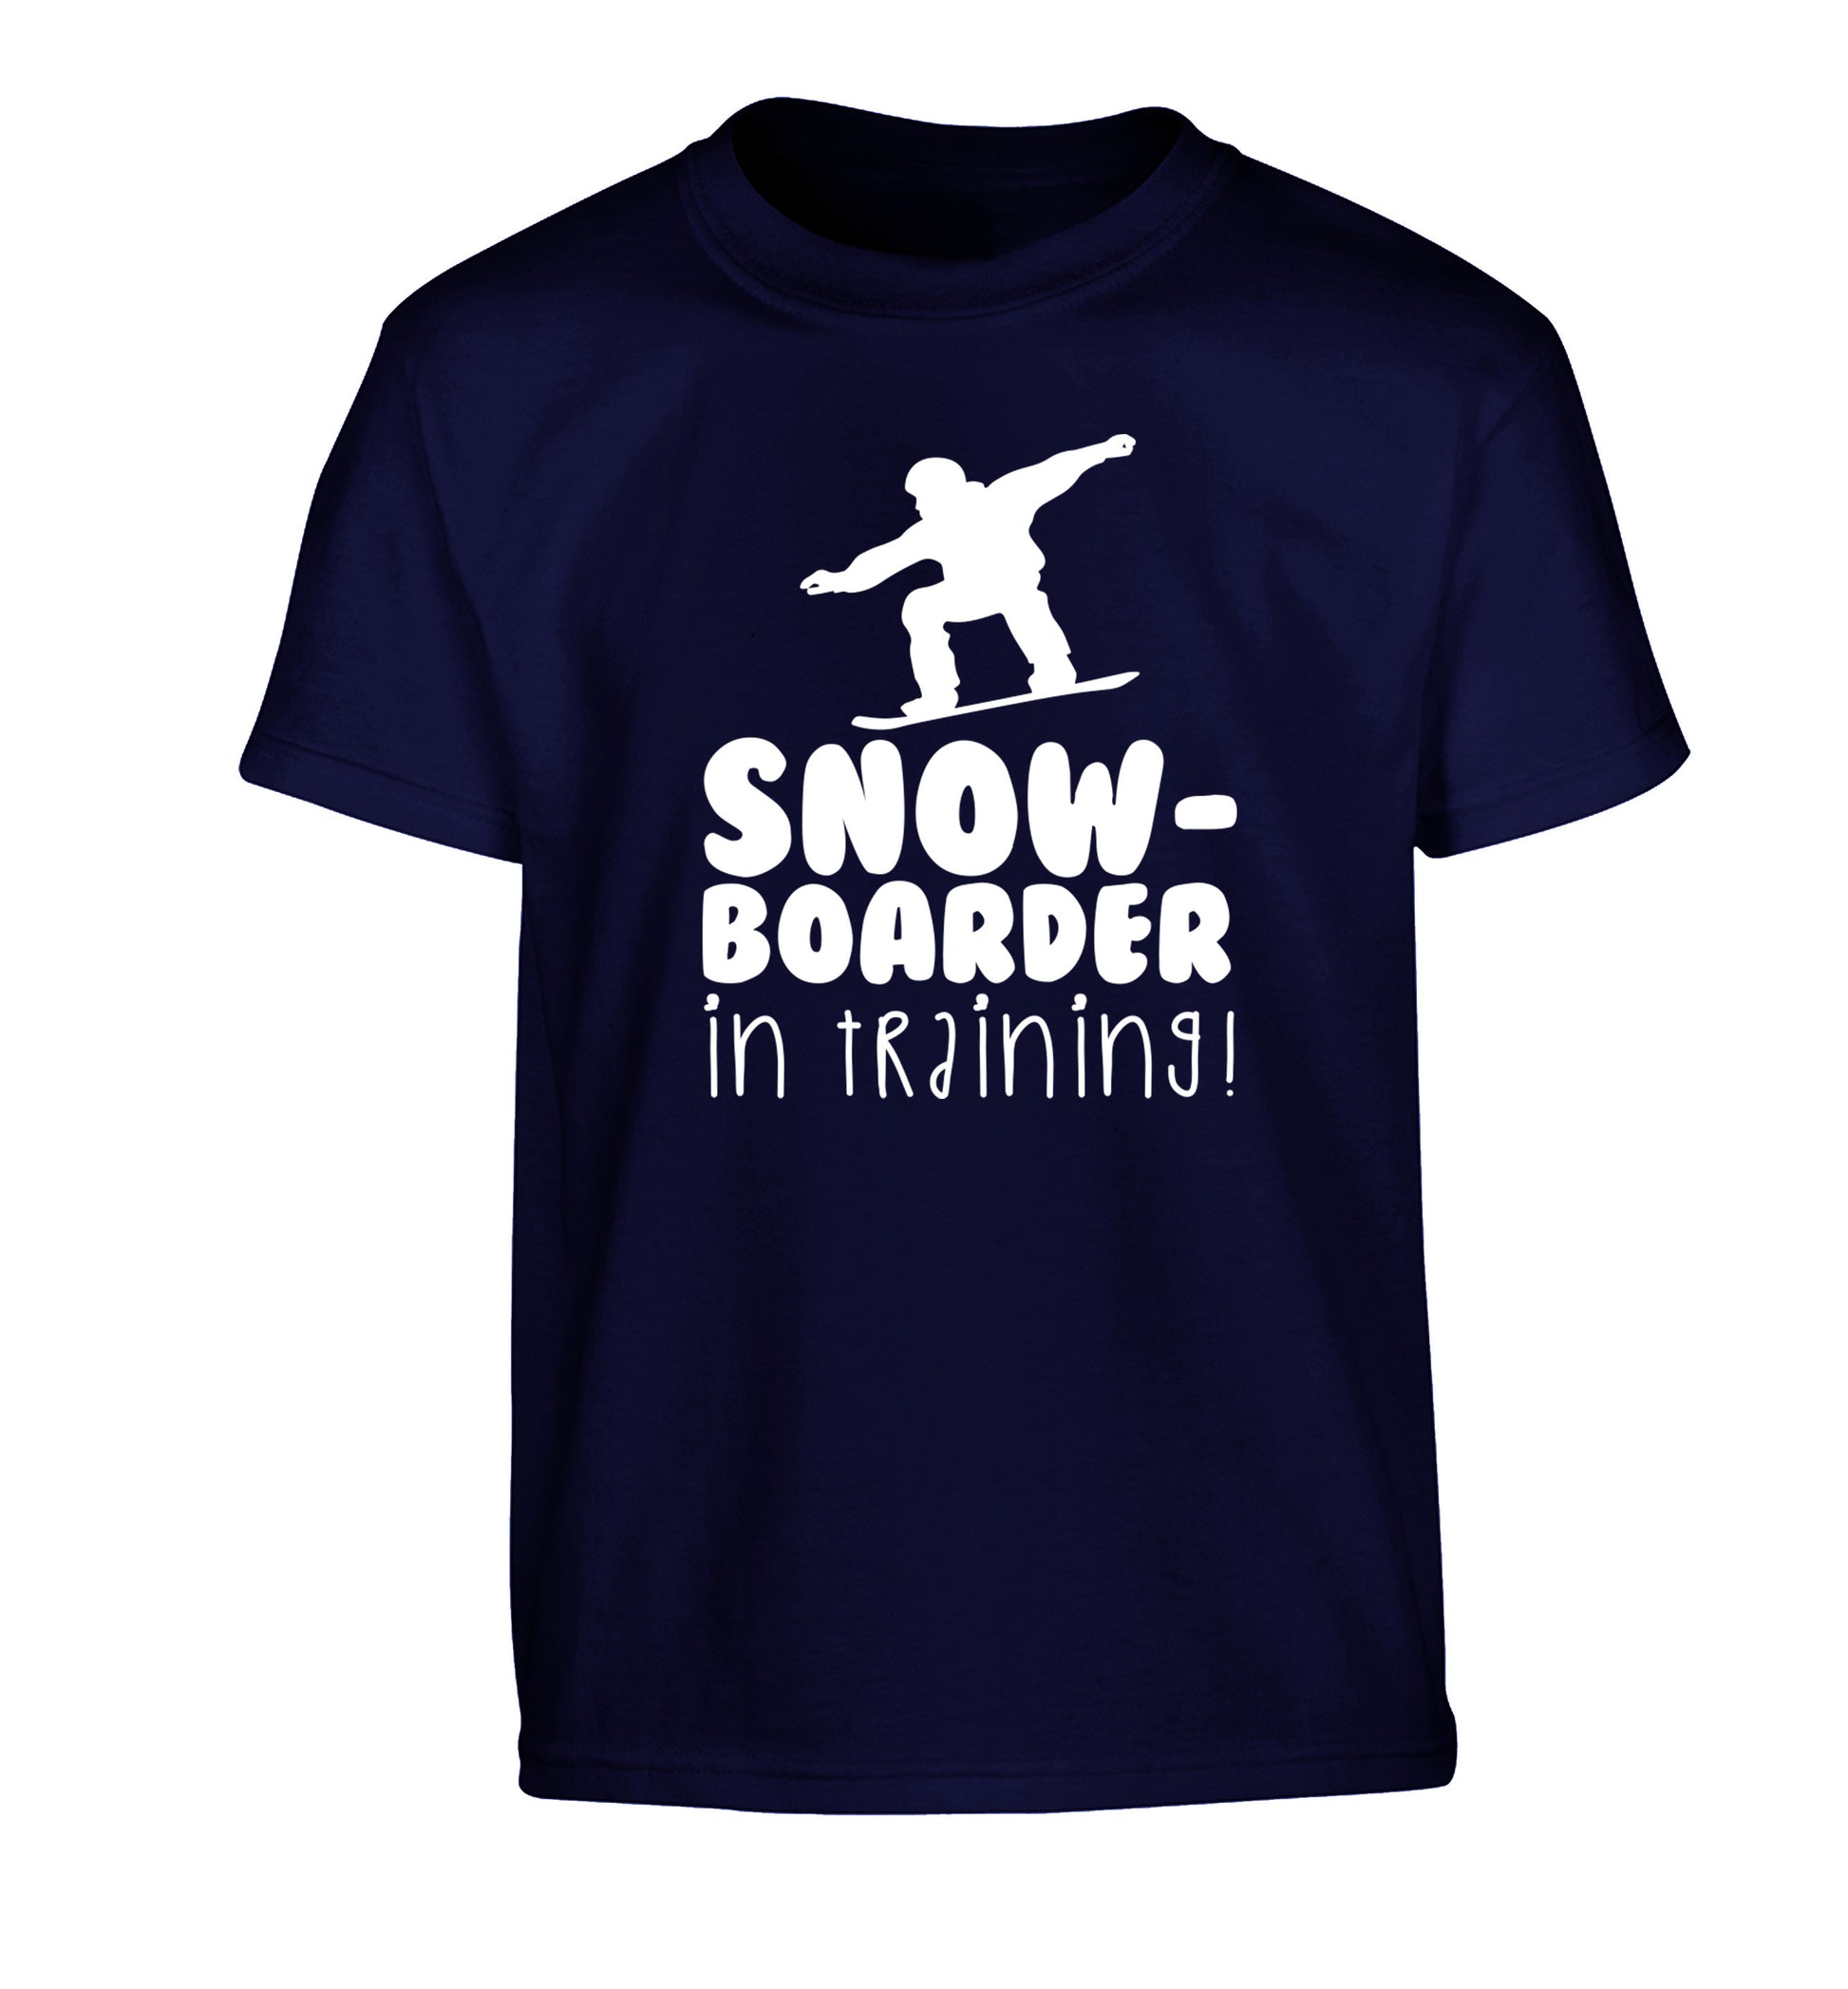 Snowboarder in training Children's navy Tshirt 12-14 Years